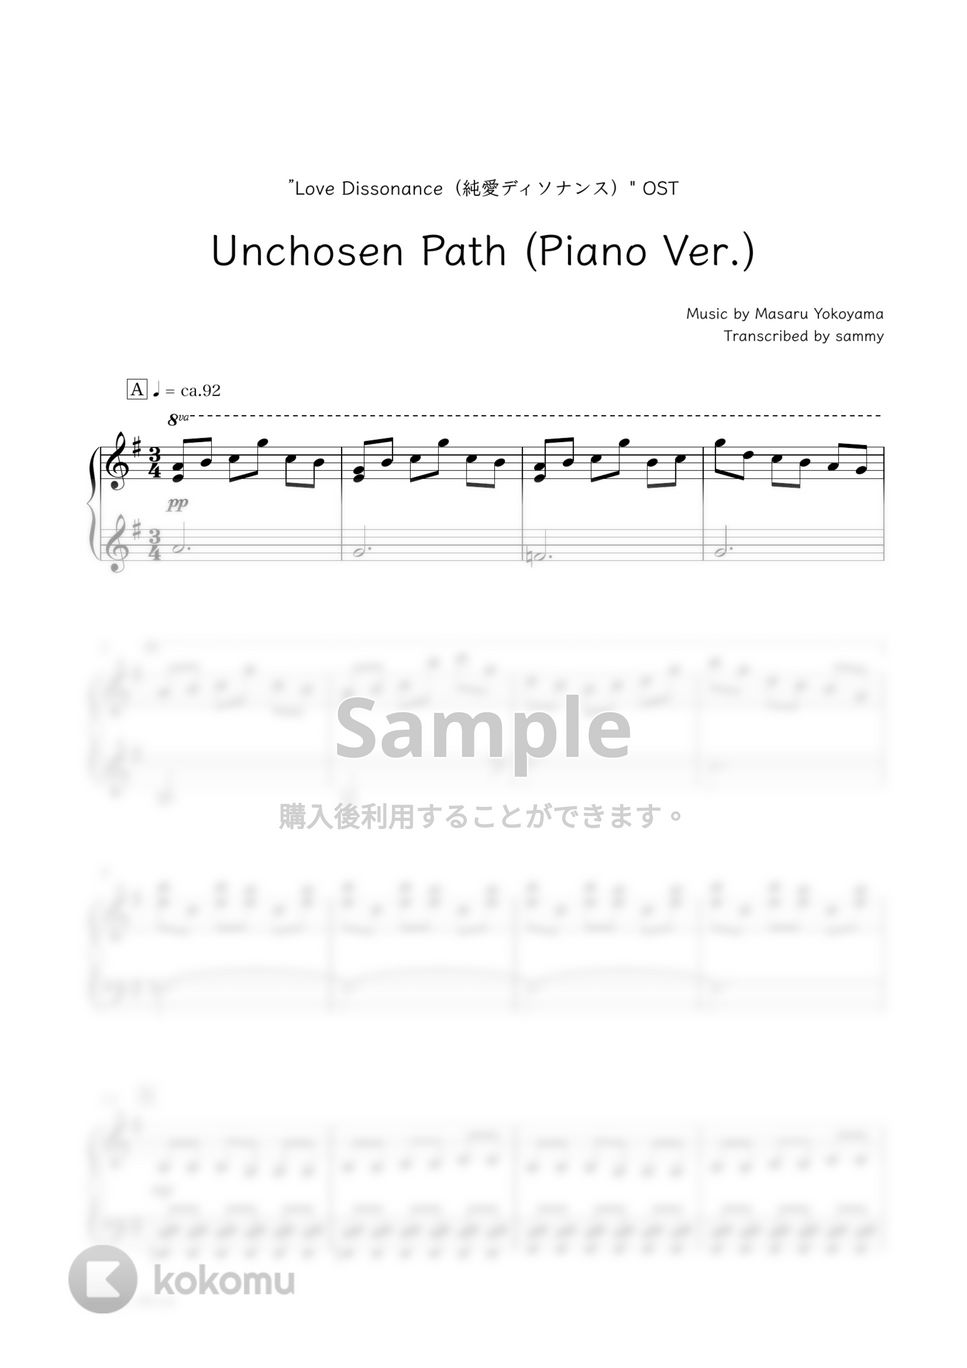 ドラマ『純愛ディソナンス』OST Unchosen Path (Piano Ver.) 楽譜 by sammy